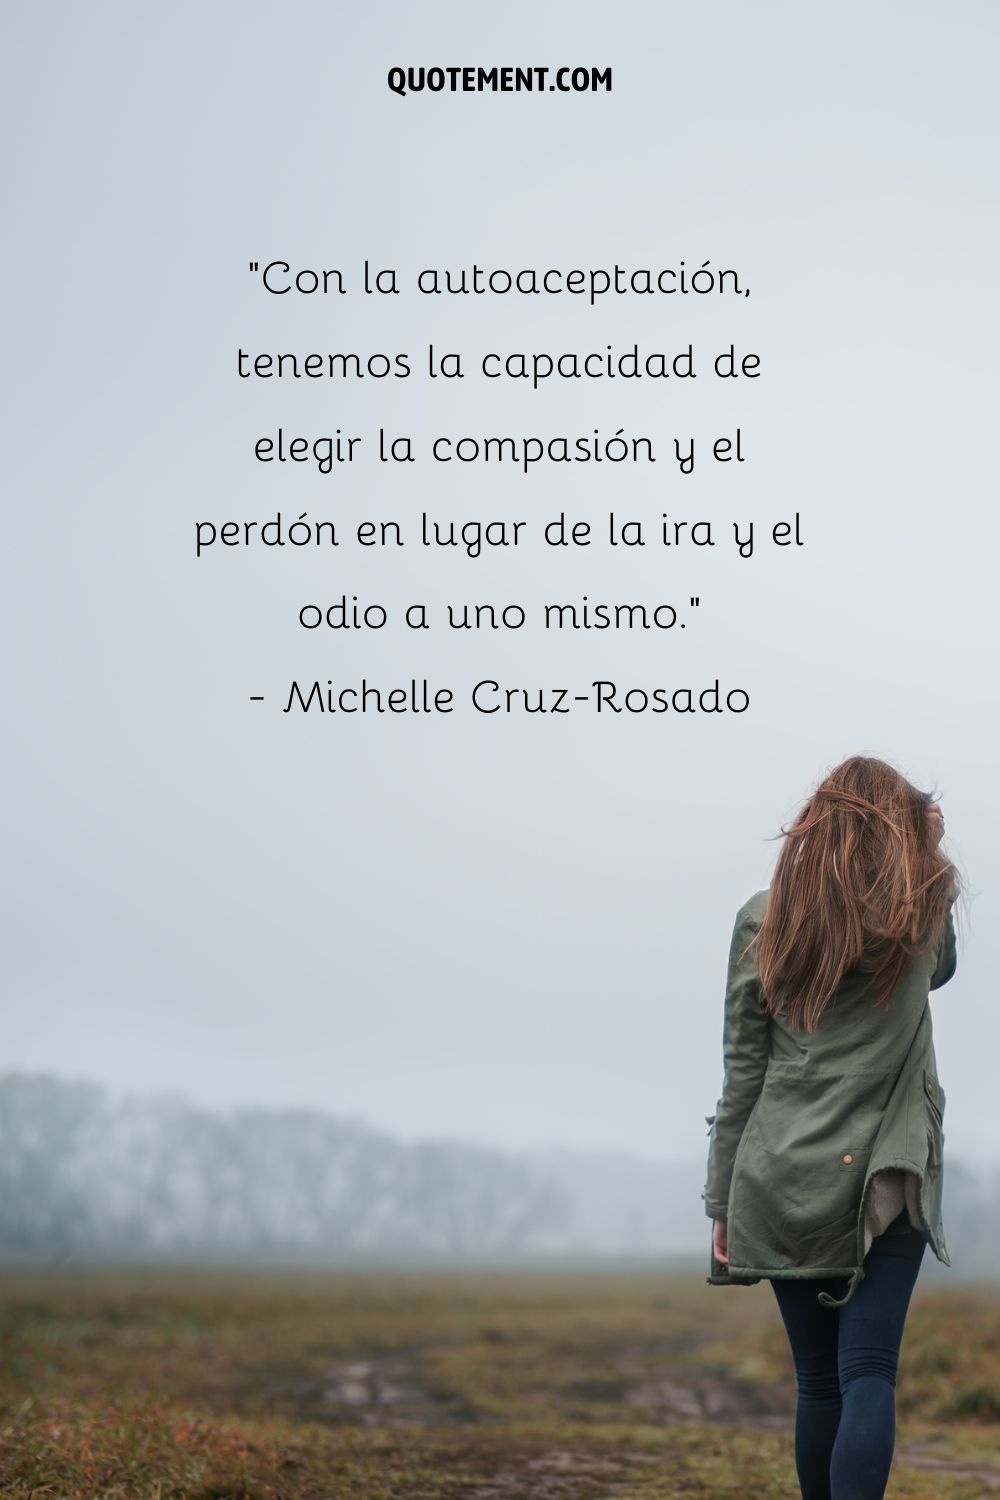 "Con la autoaceptación, tenemos la capacidad de elegir la compasión y el perdón en lugar de la ira y el odio hacia nosotros mismos". - Michelle Cruz-Rosado